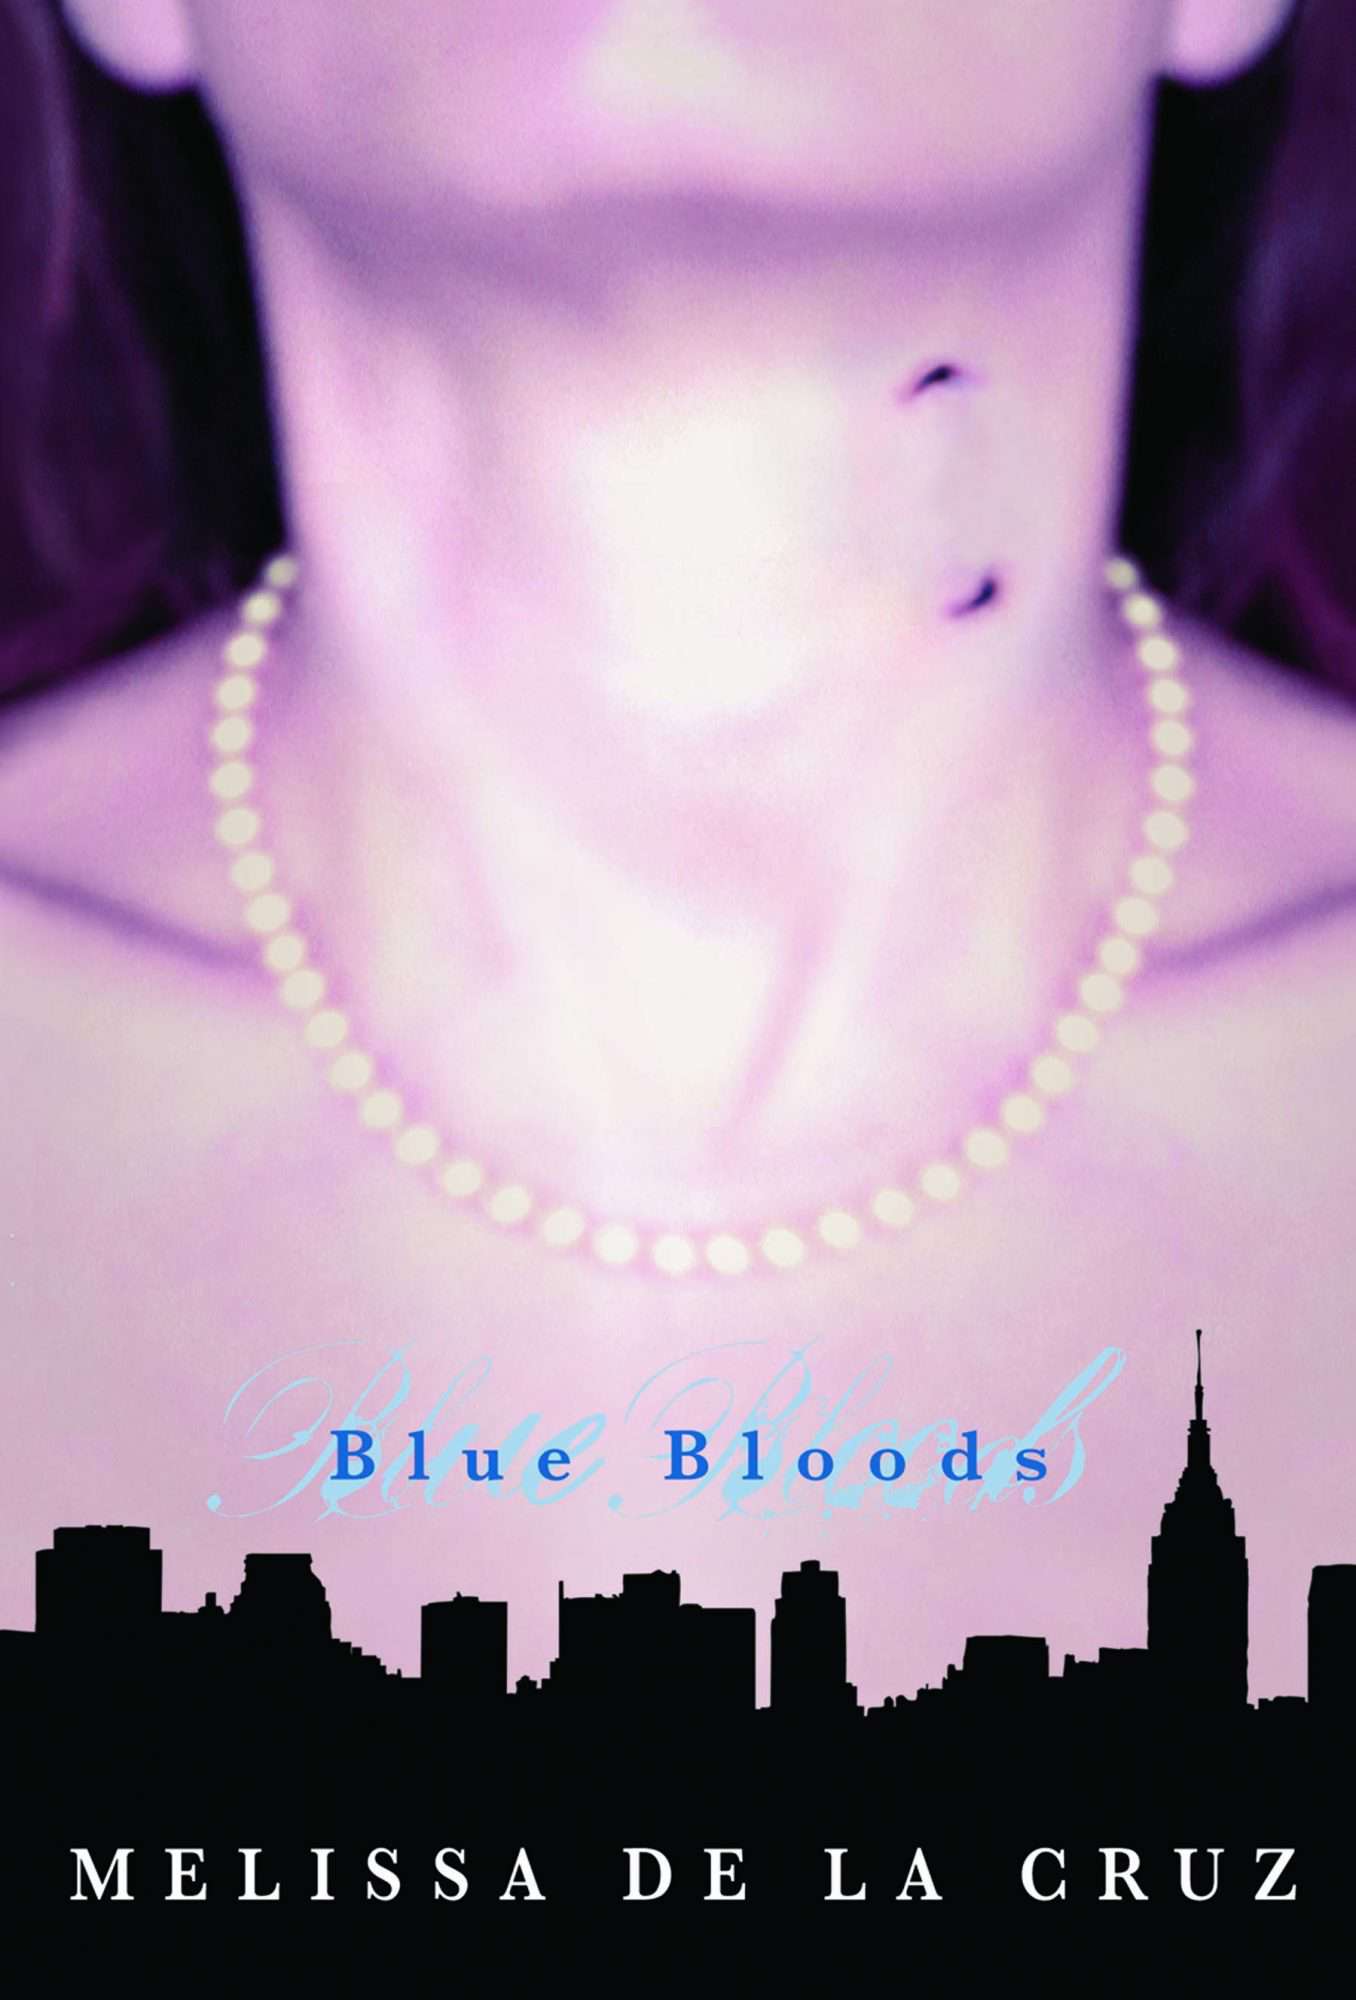 Blue Bloods by Melissa de la Cruz (2006)